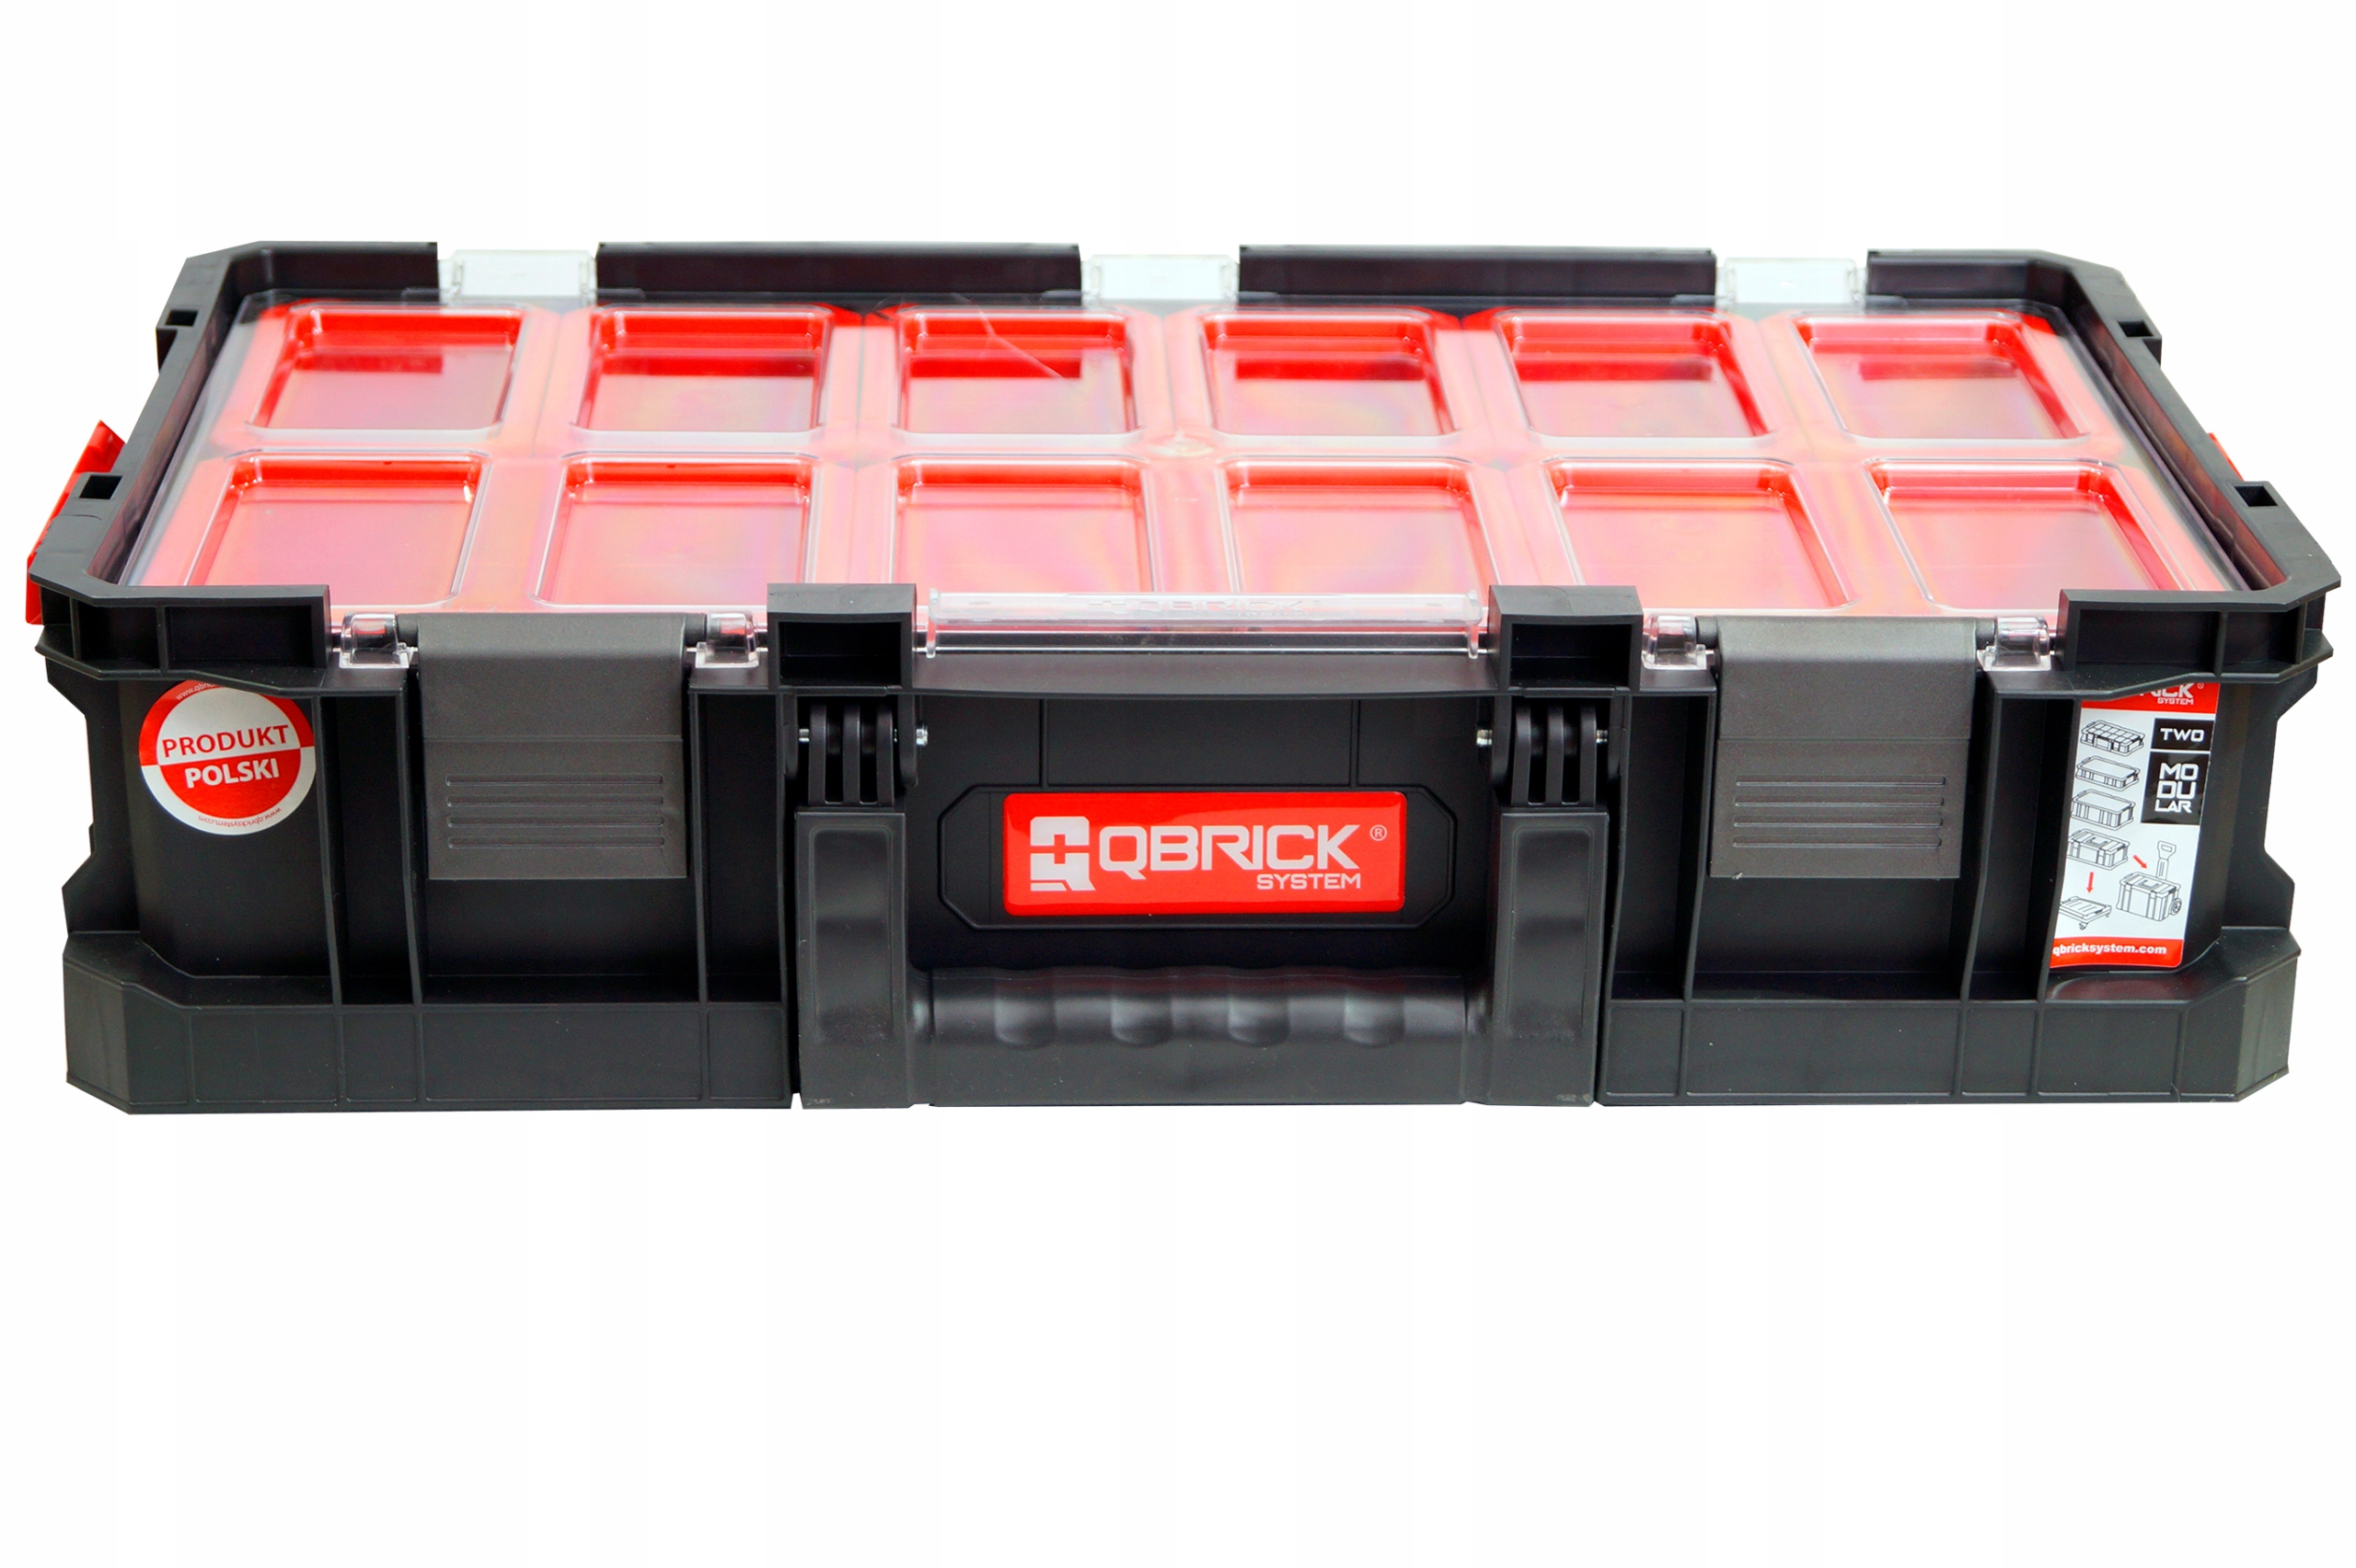 Ящик для инструментов Qbrick System two. Ящик для инструментов Qbrick System two Box 200. Ящик для инструментов Qbrick System Pro 700. 5901238251149, Ящик для инструментов Qbrick System two Organizer Multi , черный.